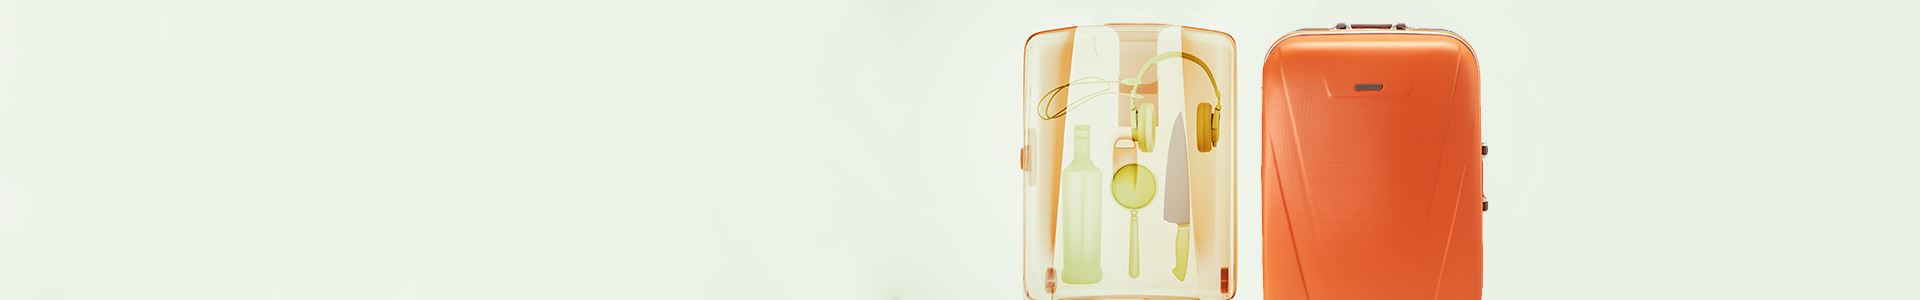 Zdjęcie pomarańczowej torby na kółkach ze zdjęciem rentgenowskim jej wnętrza po lewej stronie. Zdjęcie rentgenowskie pokazuje kilka przedmiotów: nóż, słuchawki, butelkę i szkło powiększające. 